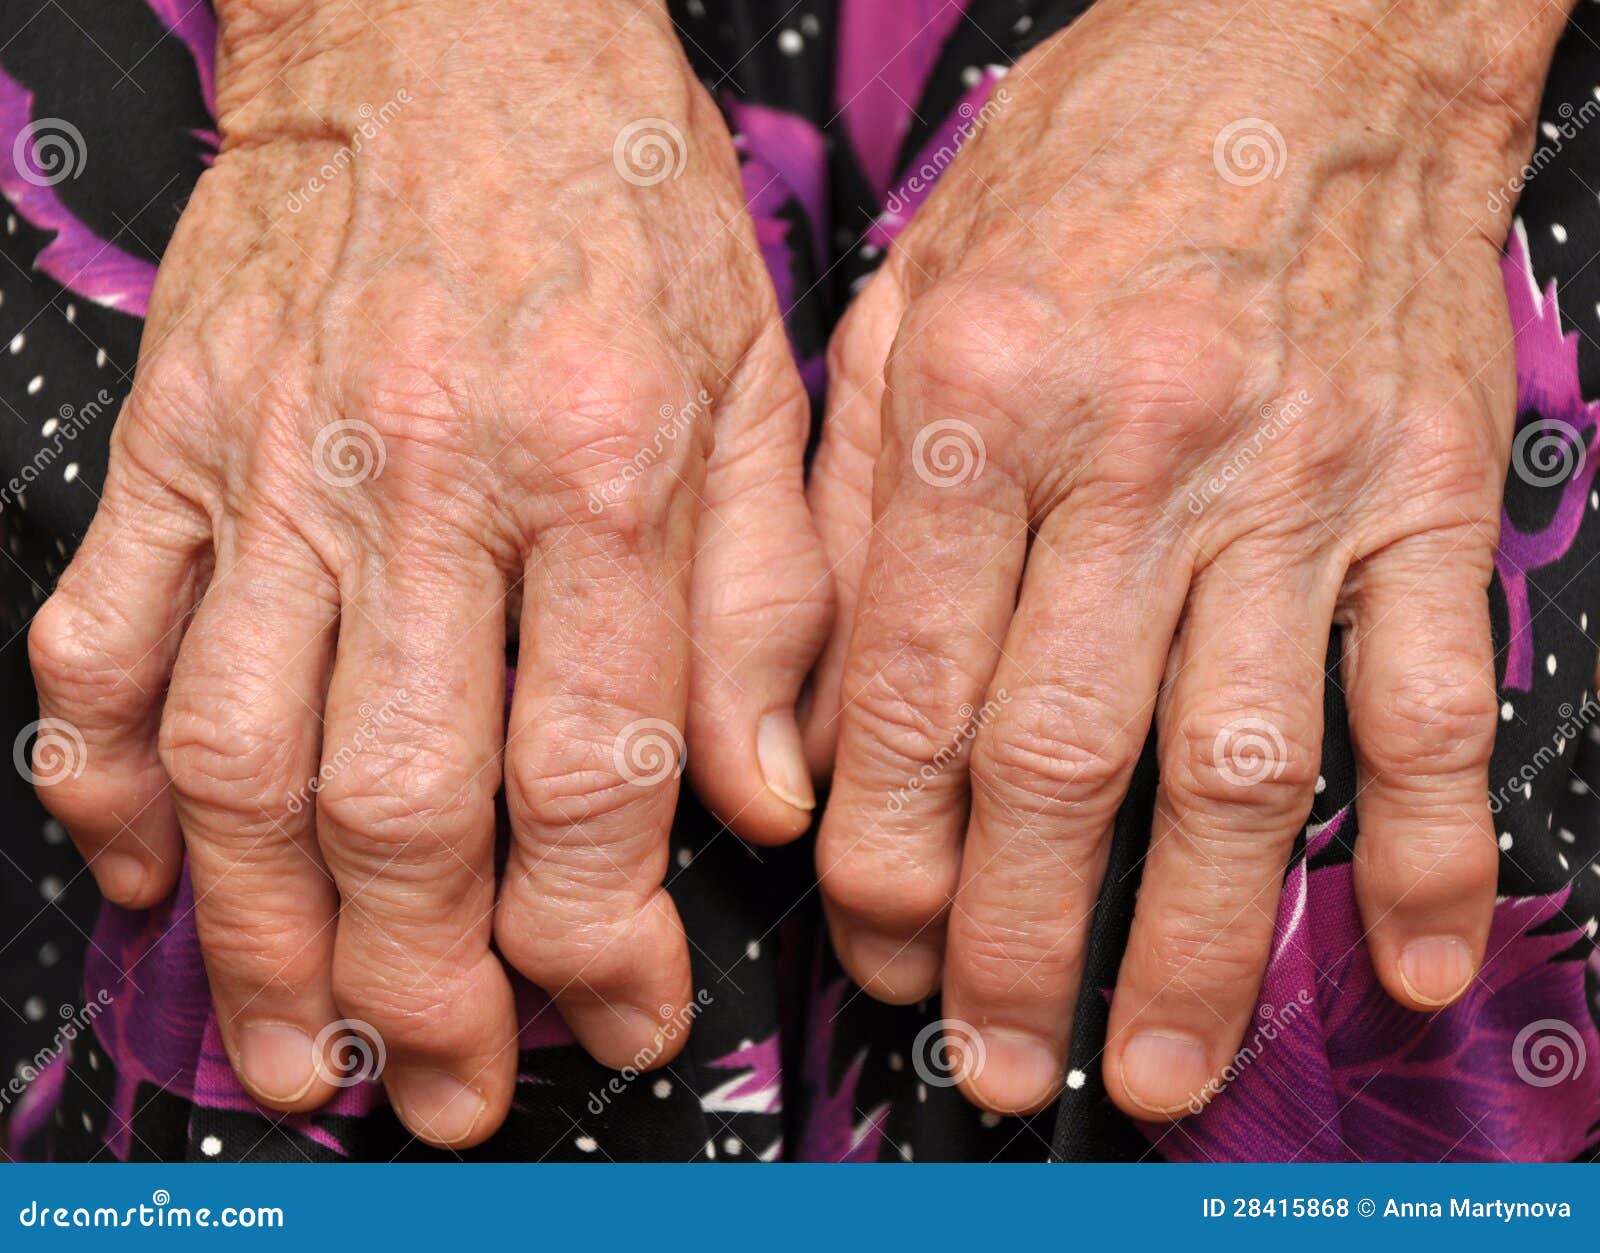 Ревматоидный артрит суставов кистей. Ревматоидный артрит полиартрит. Псориазный ревматоидный артрит. Деформирующий ревматоидный полиартрит. Ревматоидный полиартрит рук.